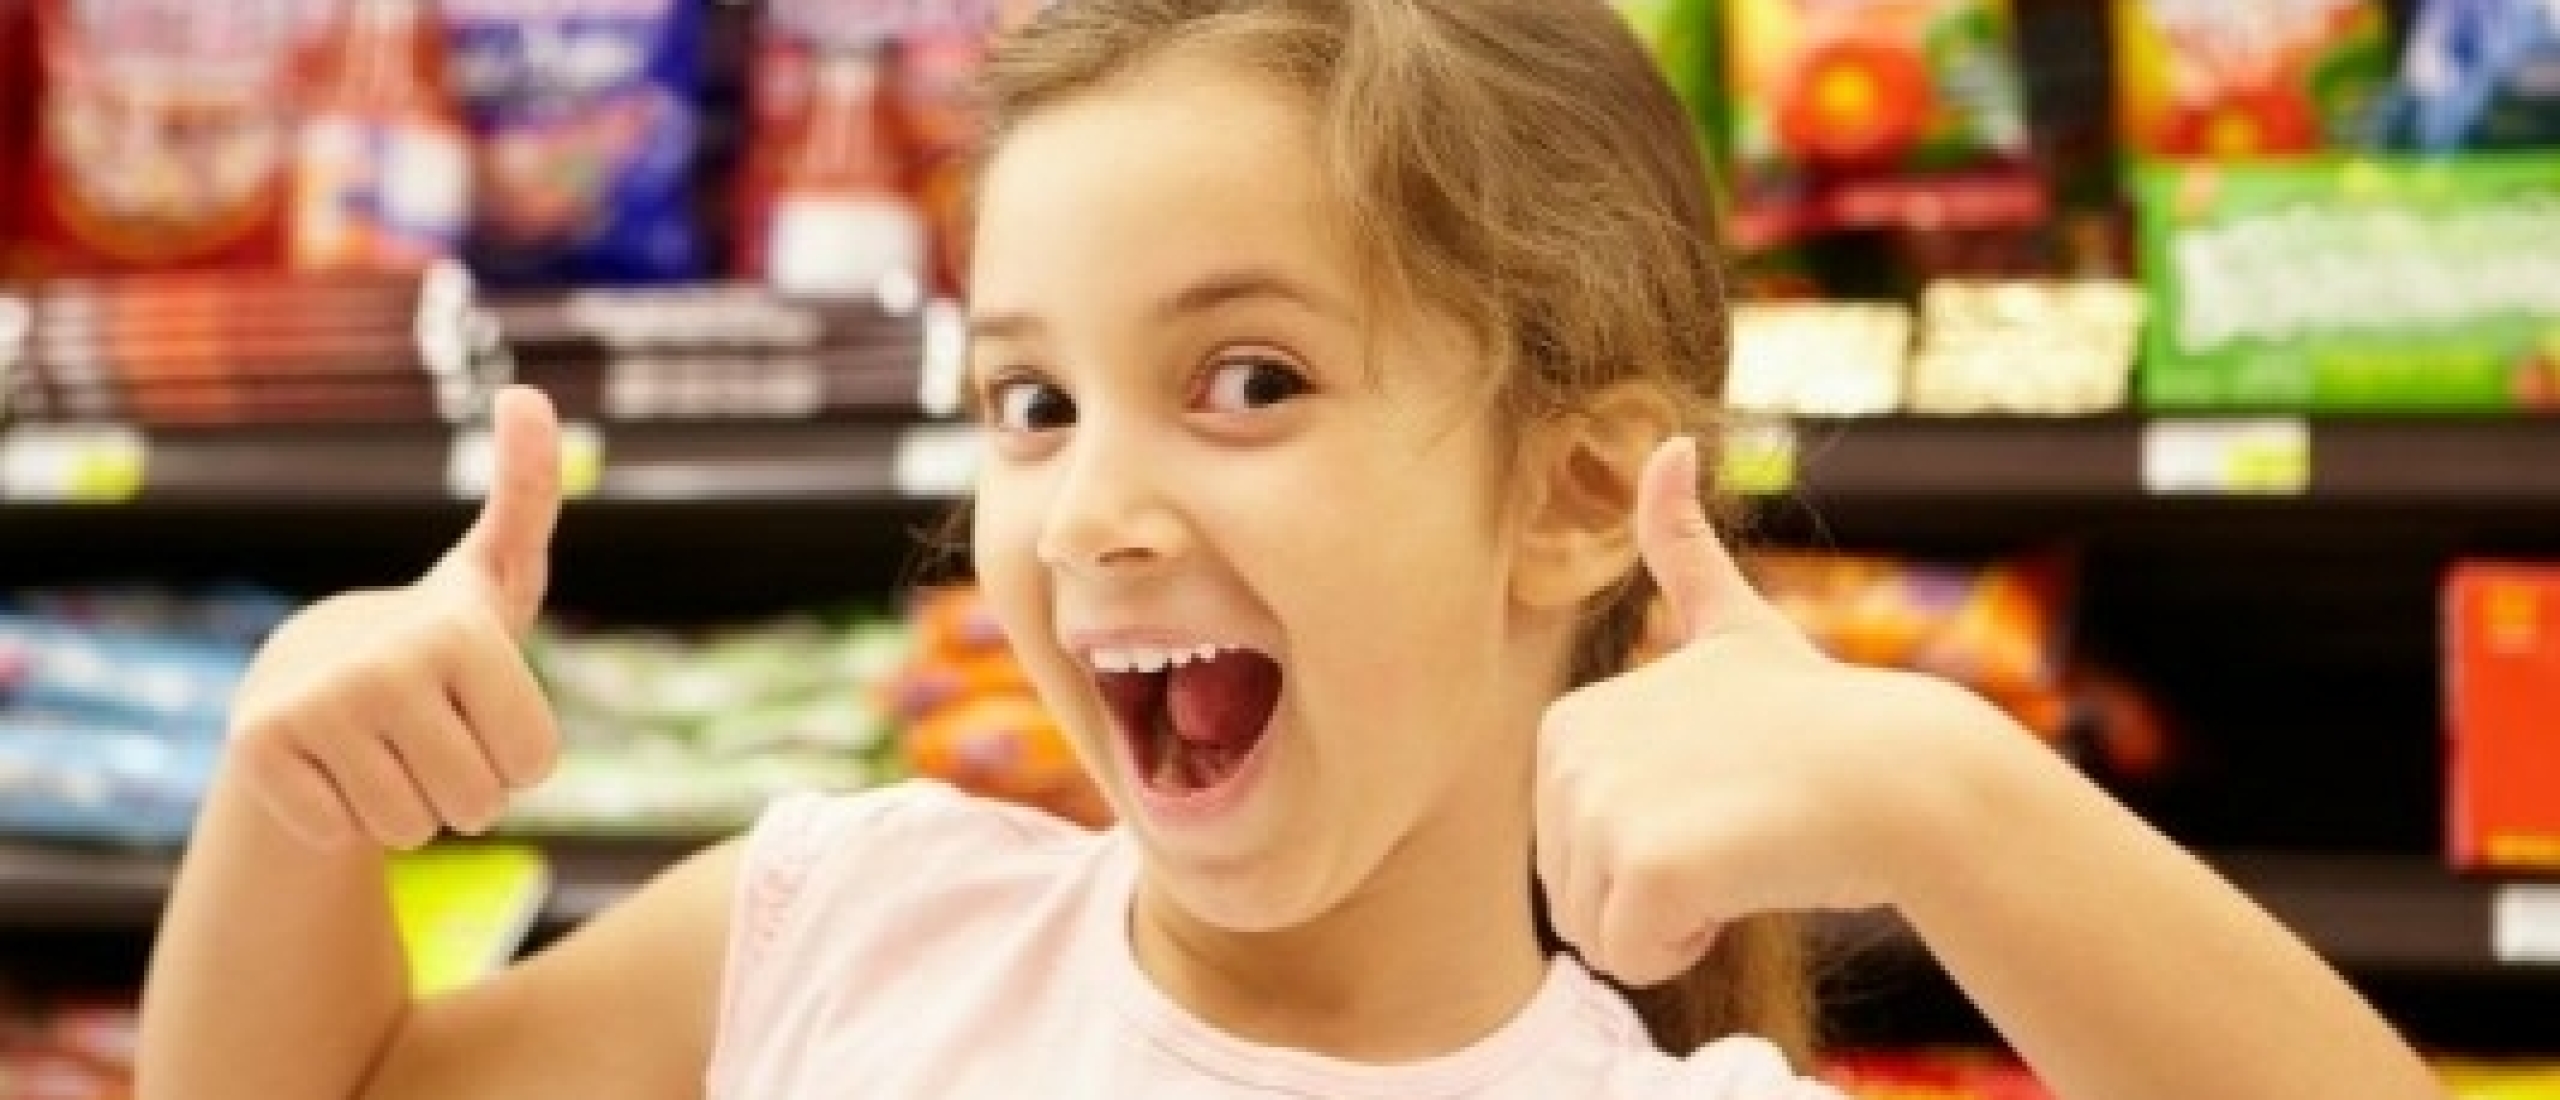 Kan mijn dochter van 8 jaar alleen naar de supermarkt?